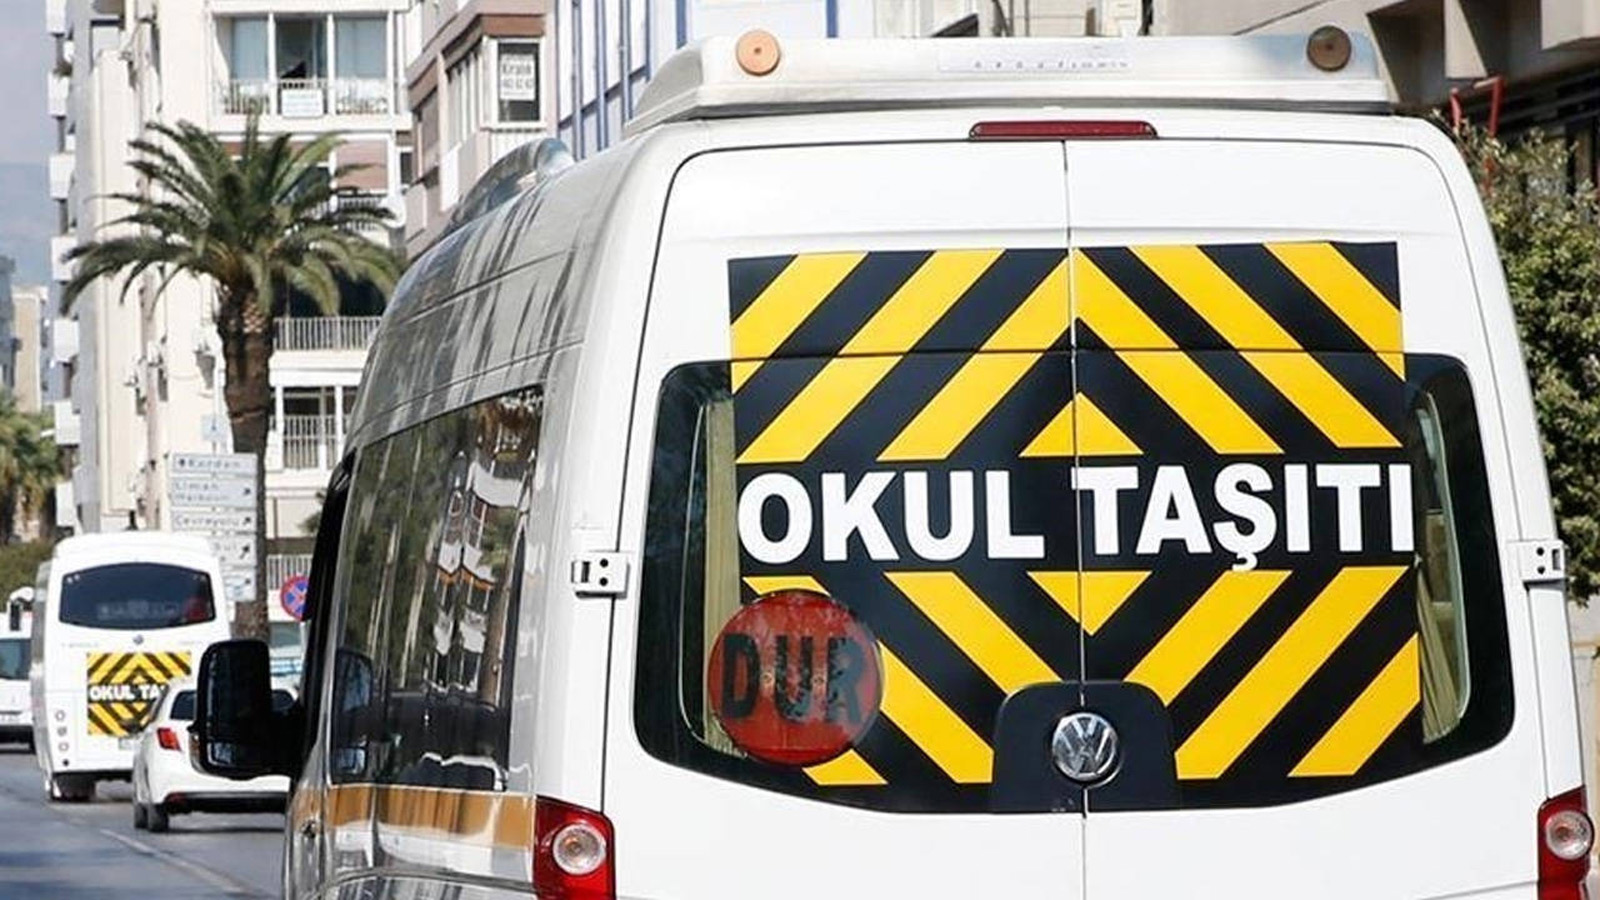 İstanbul'da öğrenci taşıyan servis aracı kaçırıldı